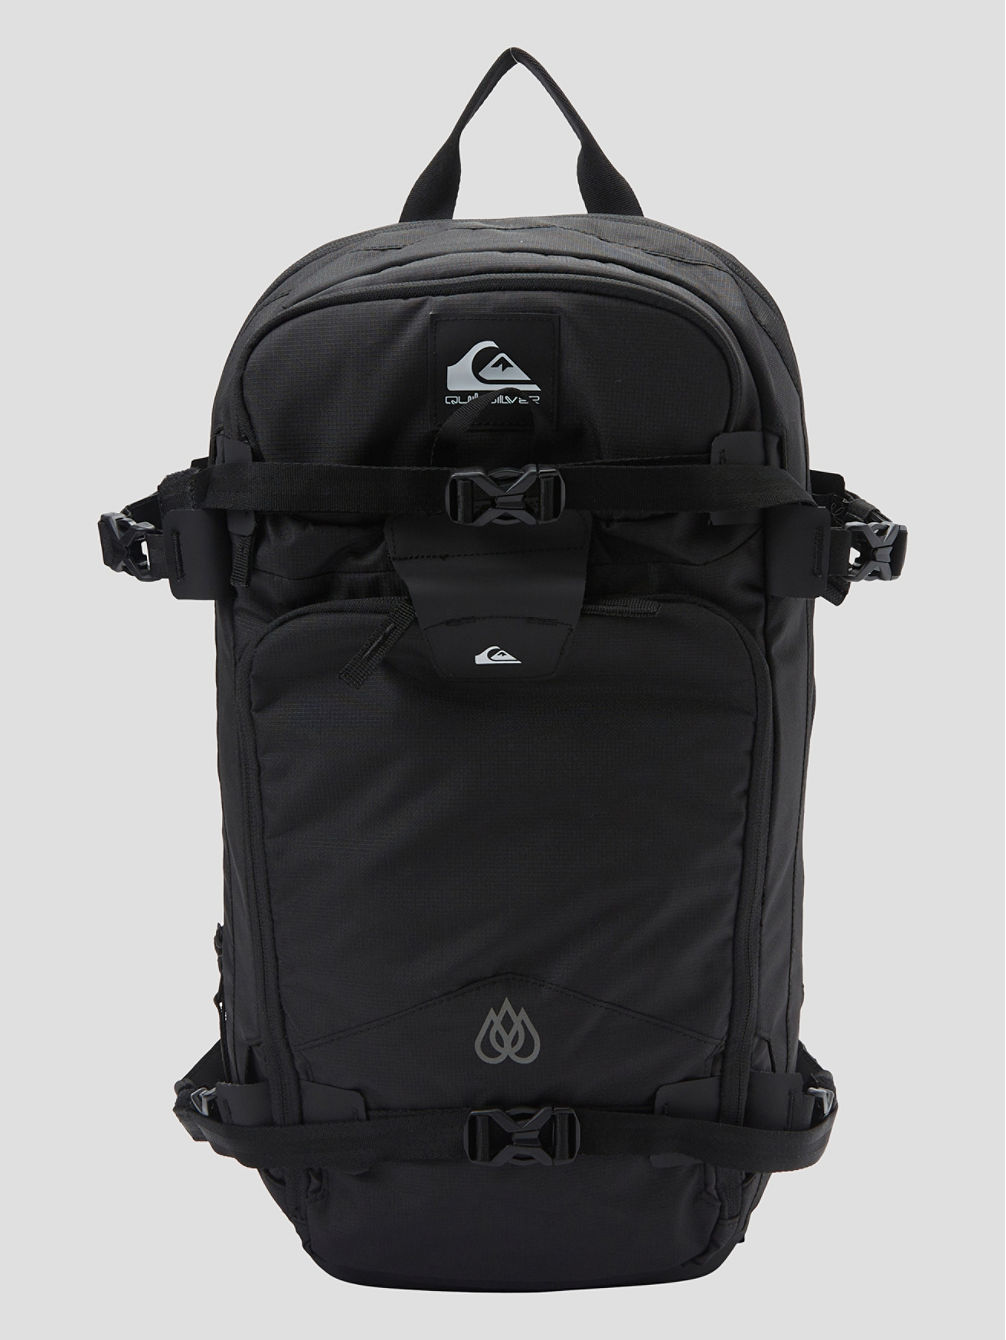 Tr Platinum 18L Backpack